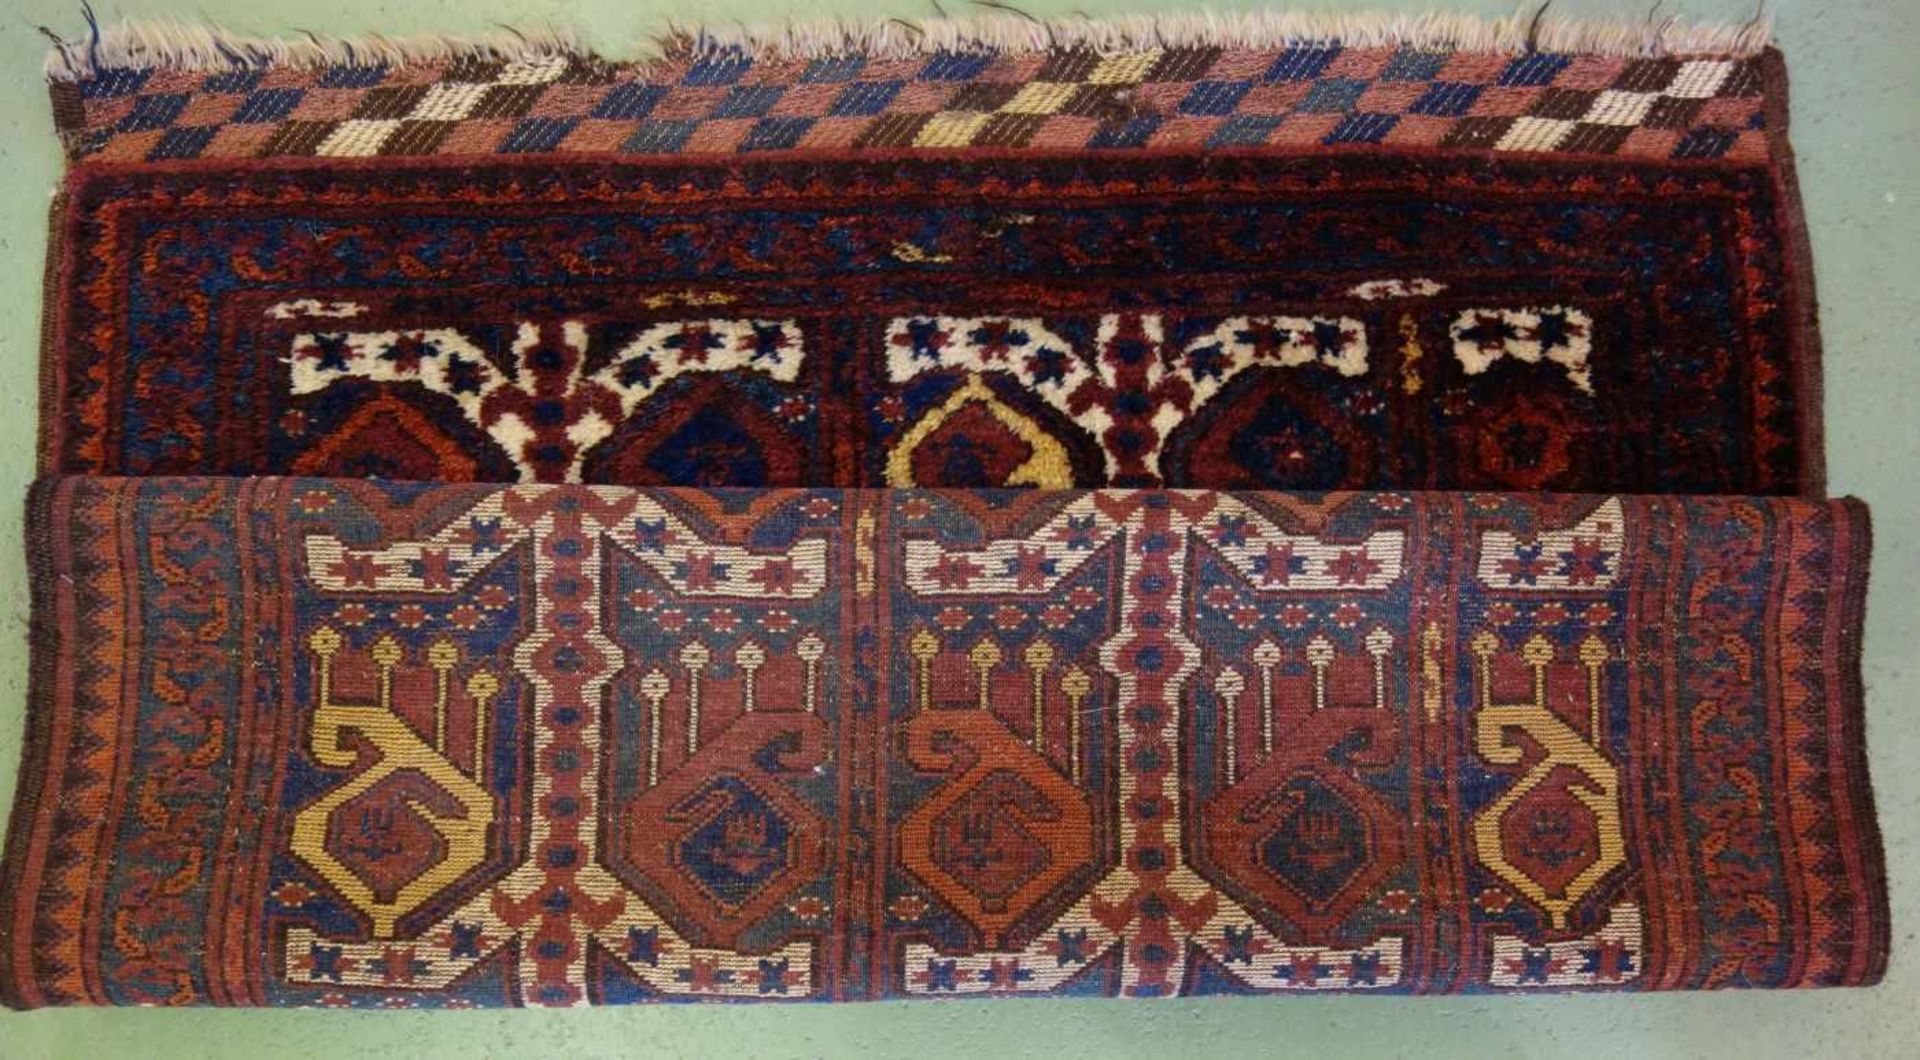 BESCHIR (ERSARI BESCHIR) / KLEINER TEPPICH / carpet / Zentralasien oder Südturkestan, wahrscheinlich - Image 5 of 15